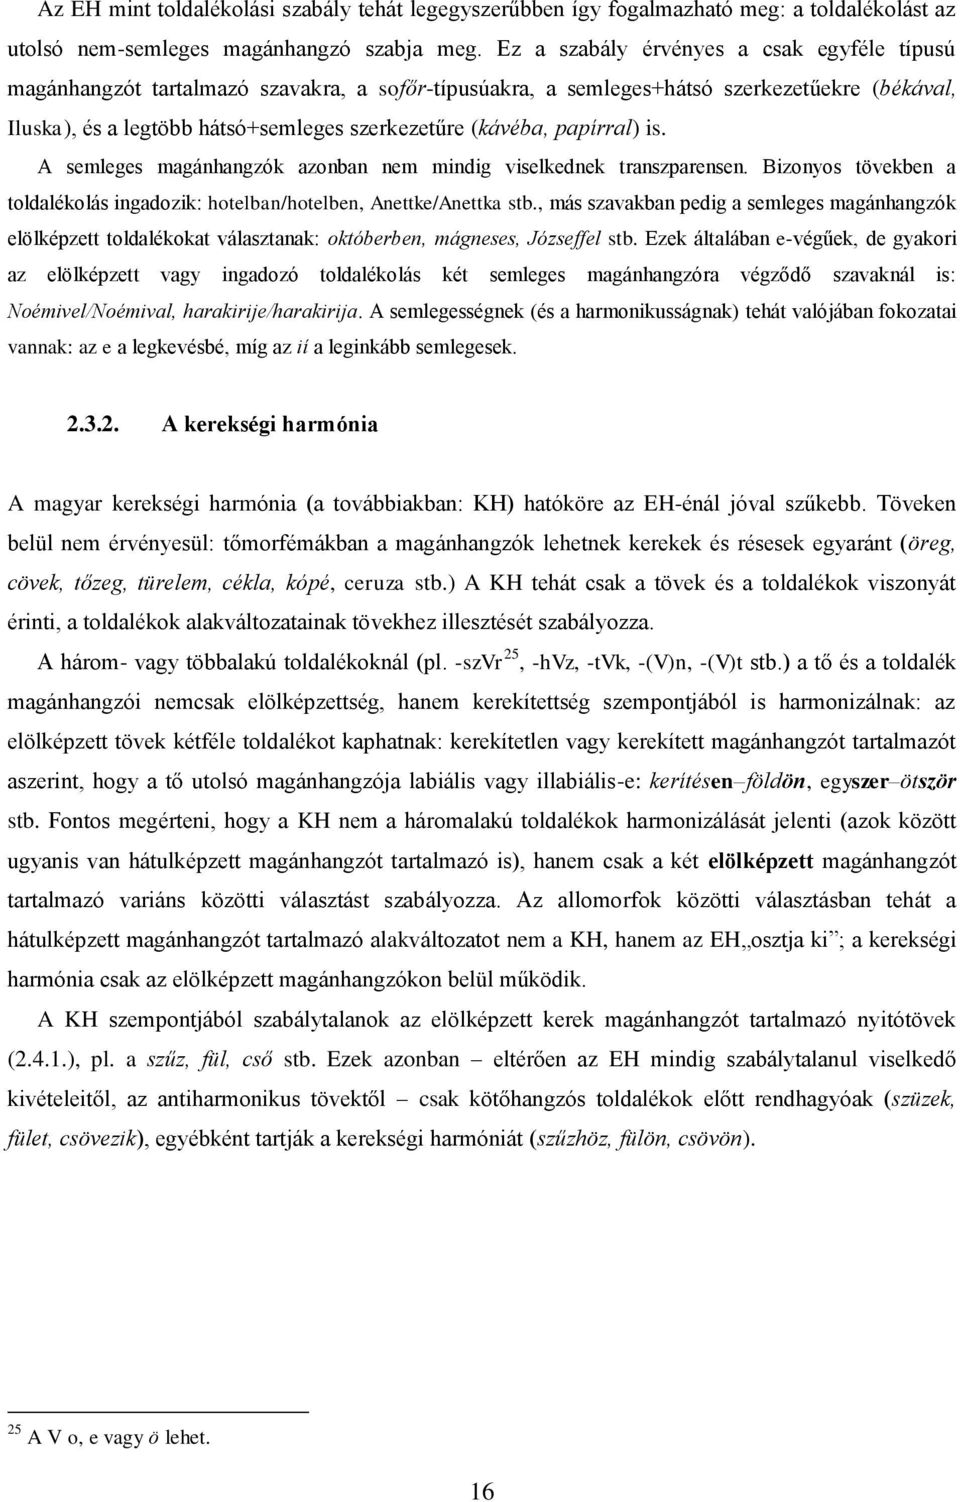 Forró Orsolya Hangtan II. jegyzet - PDF Ingyenes letöltés